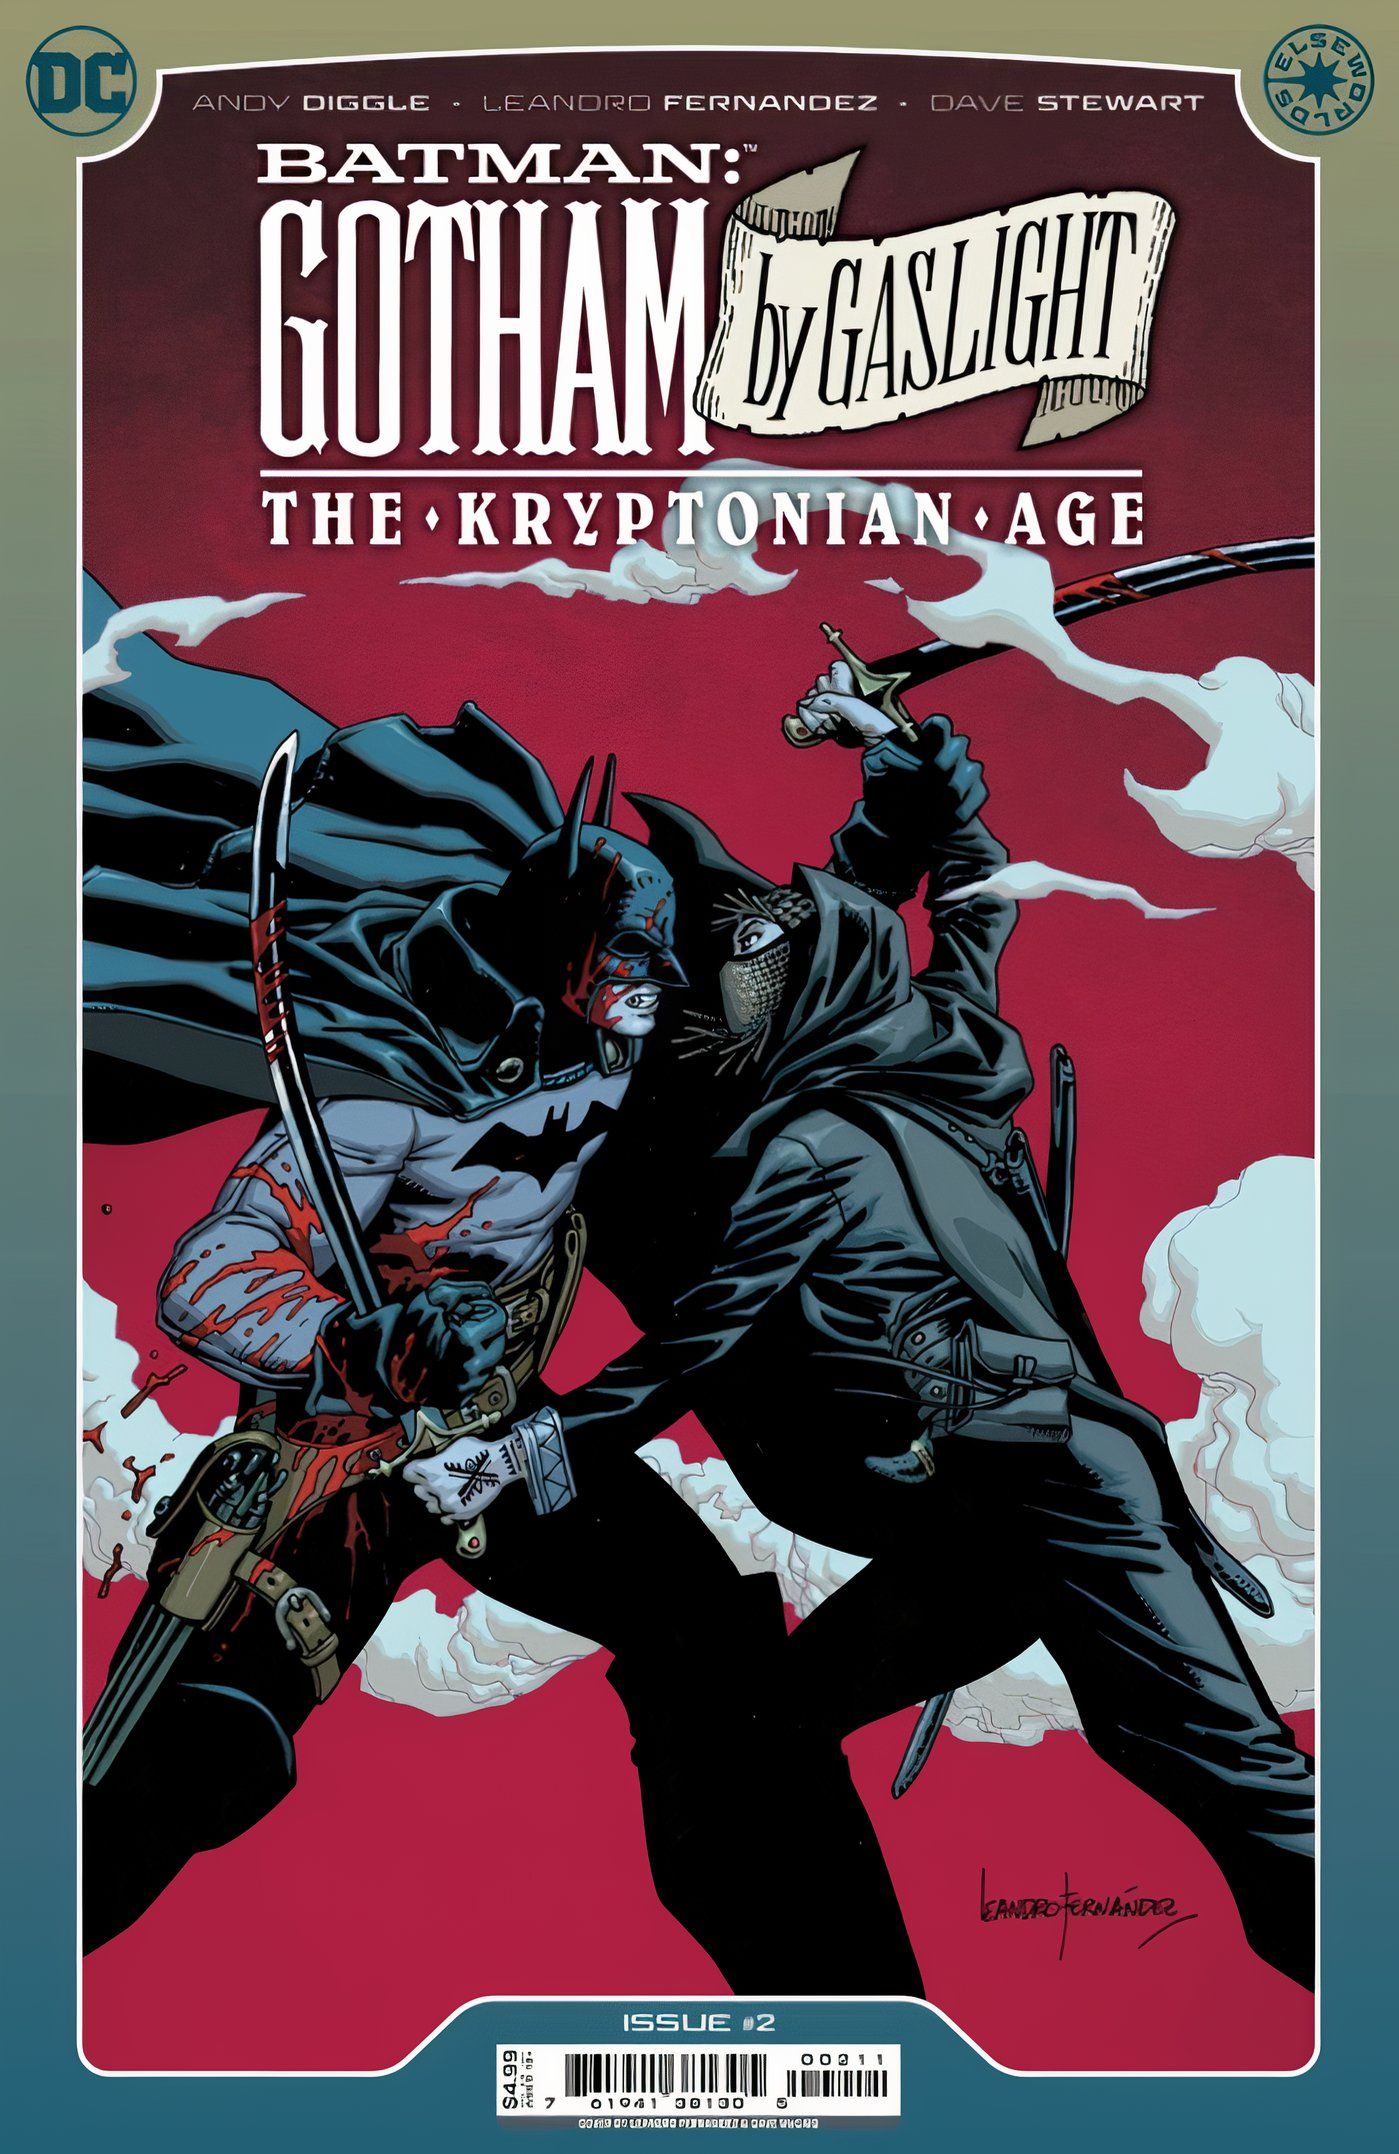 Batman Gotham by Gaslight Kryptonian Age main cover #2 Talia al Ghul